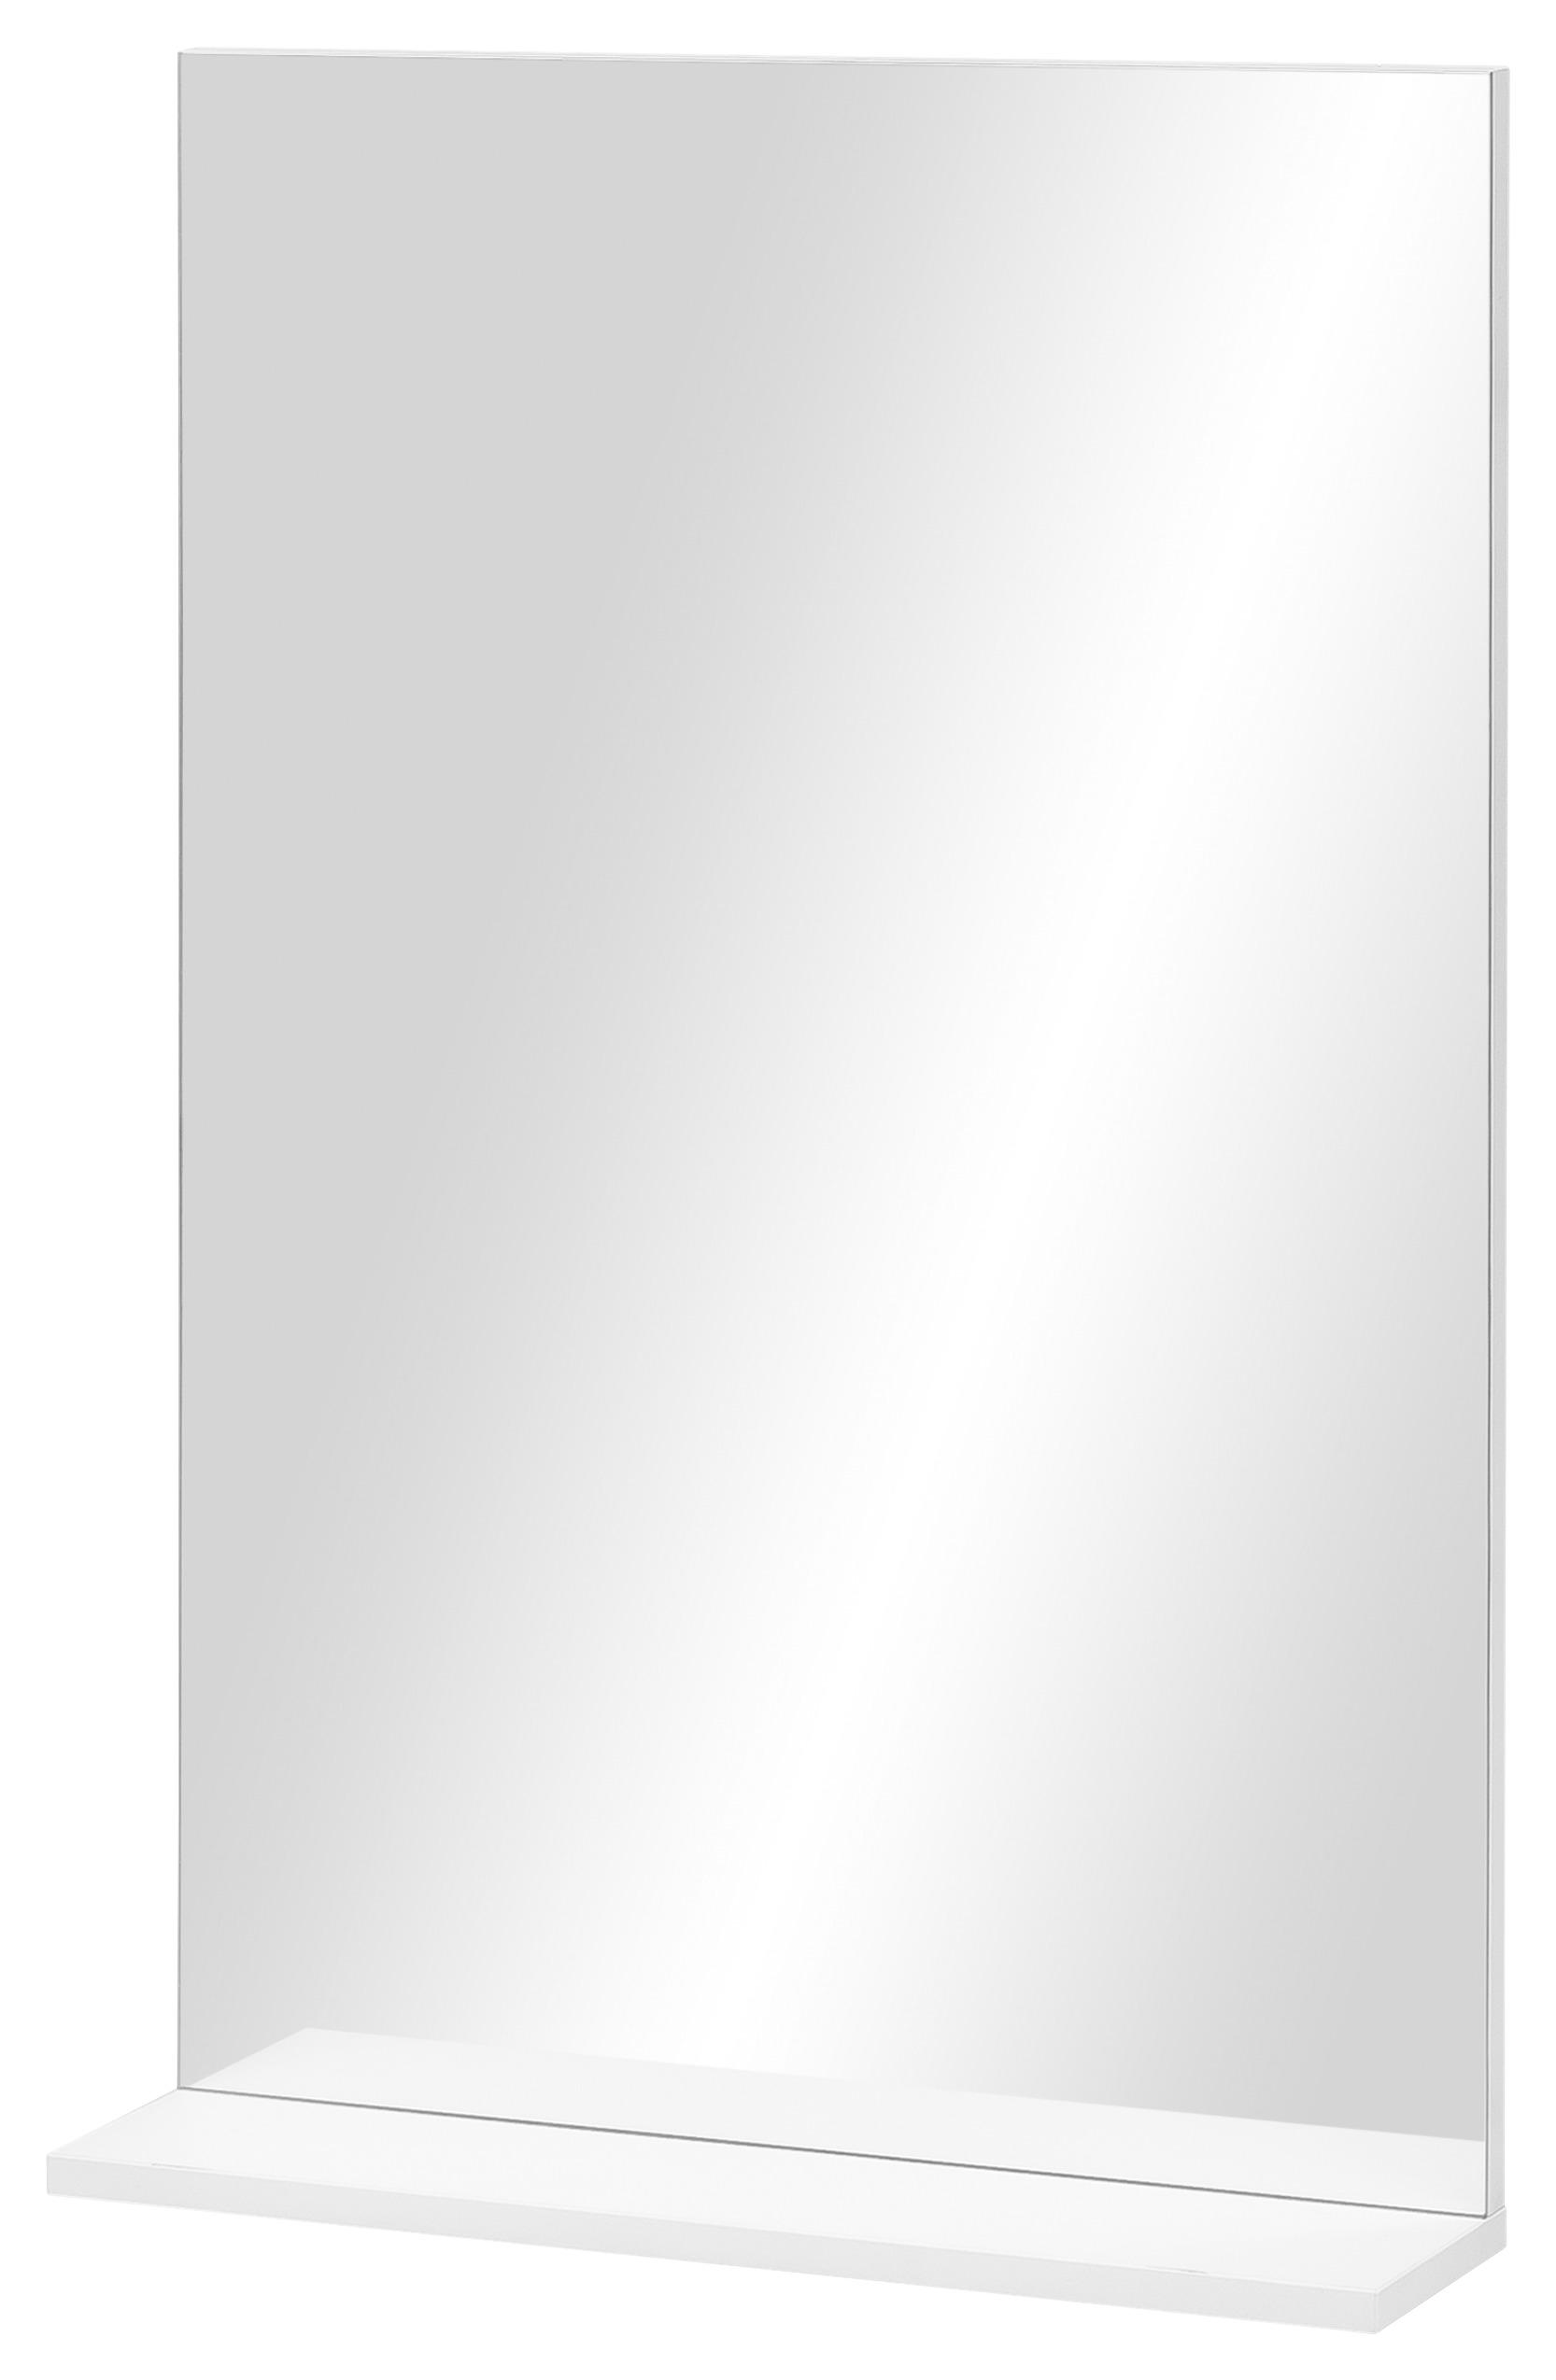 BADEZIMMERSPIEGEL 50/78,6/11,9 cm  - Weiß, Trend (50/78,6/11,9cm) - Stylife